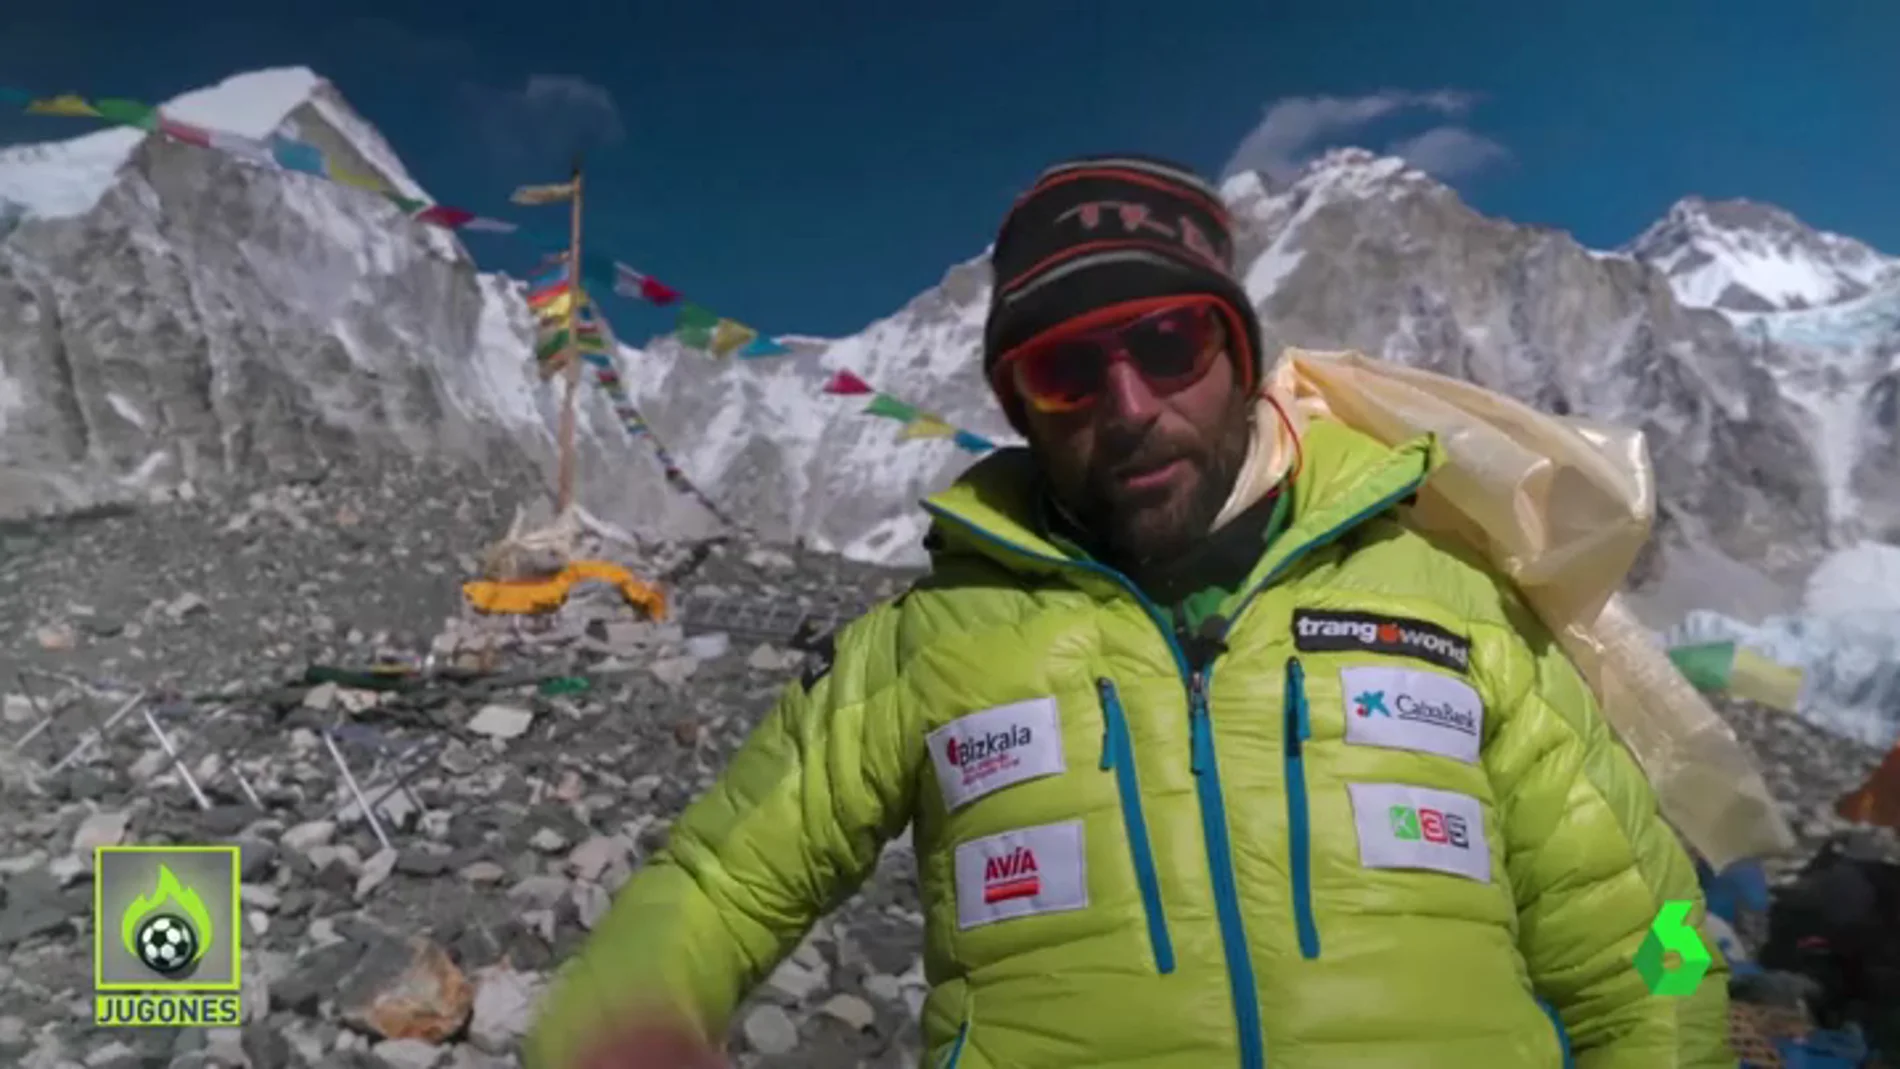 Frame 0.0 de: Alex Txikon parte para hacer historia en la cumbre del Everest entre el 14 y el 18 de febrero